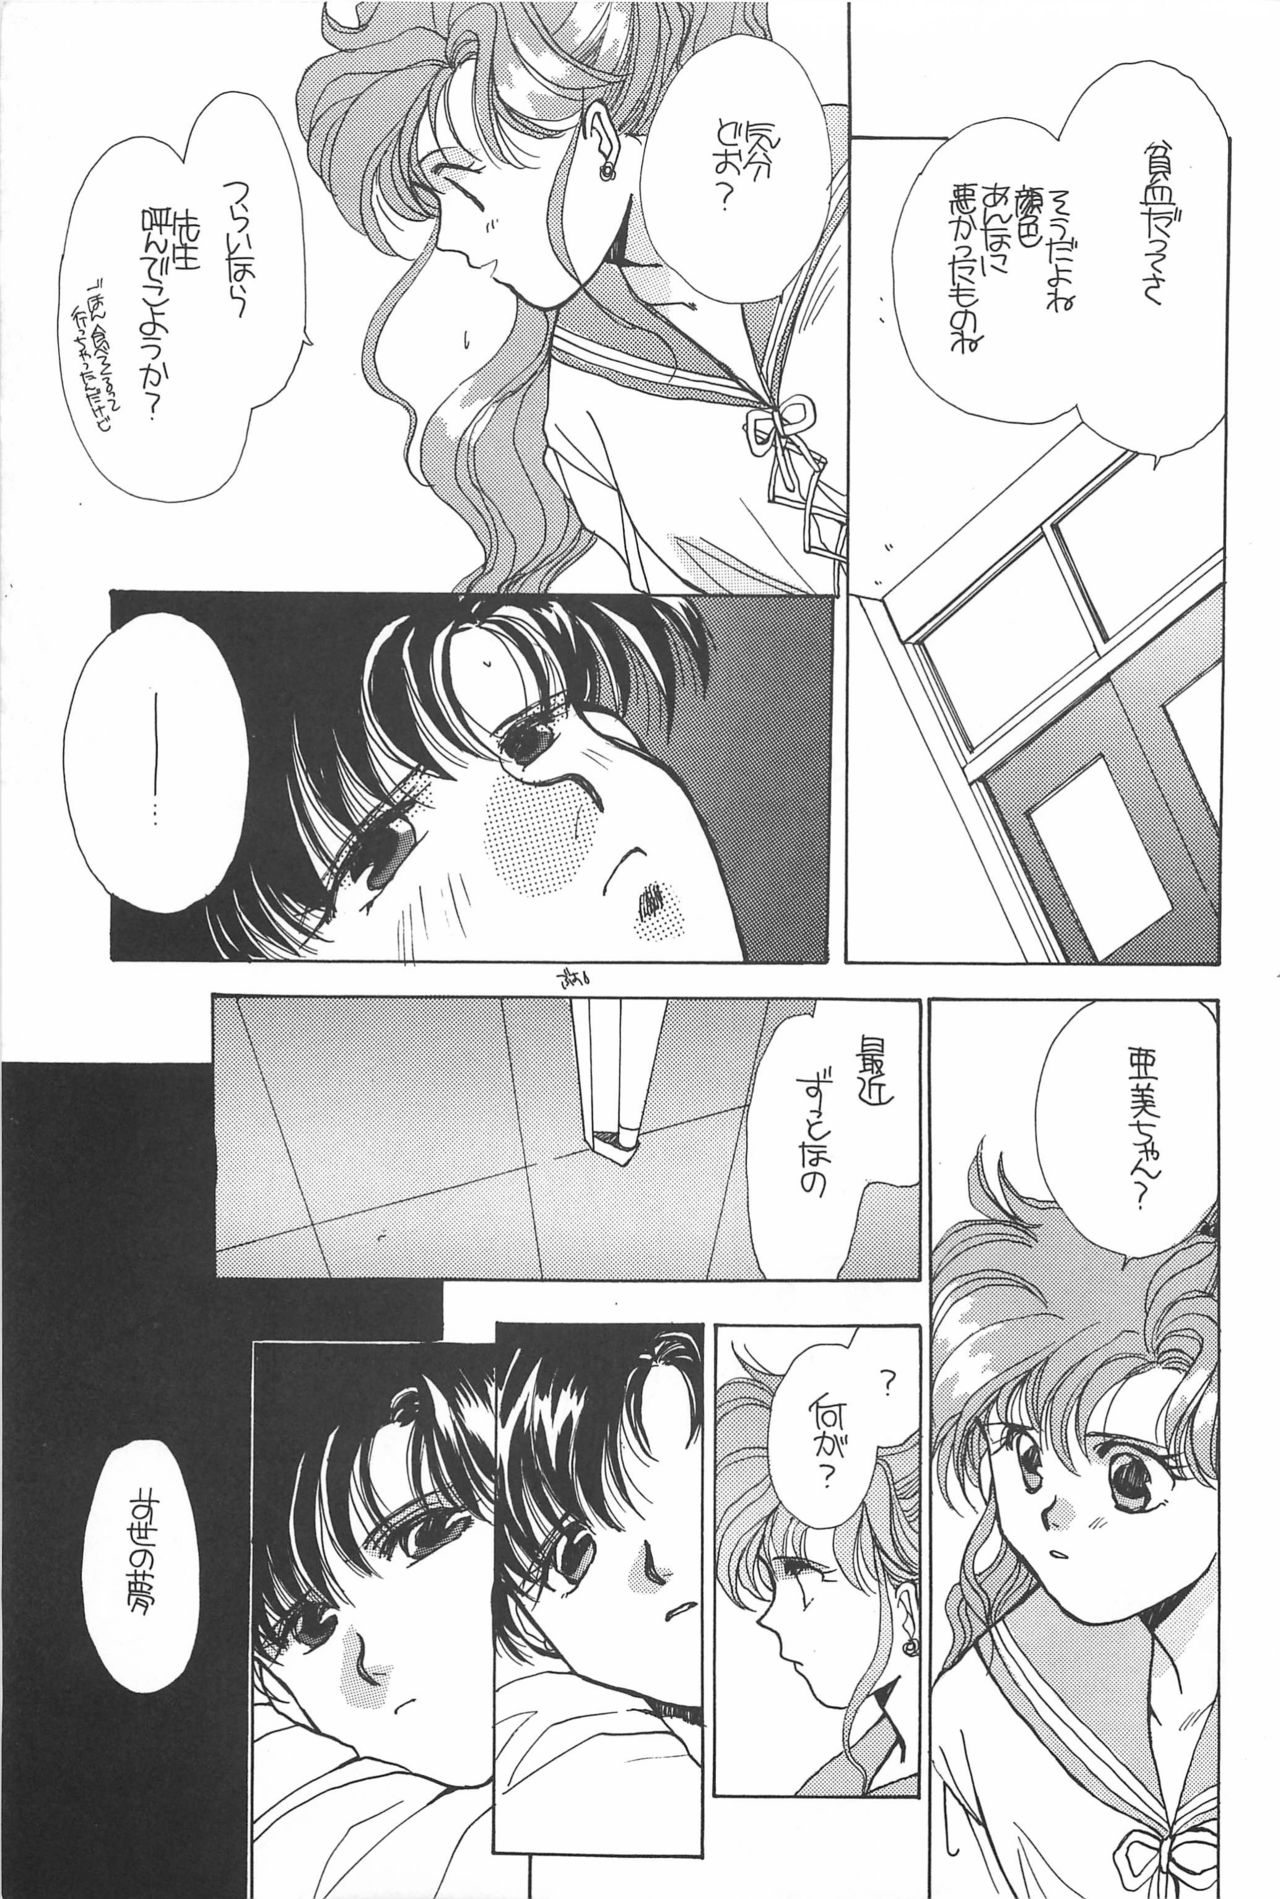 [Hello World (Muttri Moony)] Kaze no You ni Yume no You ni - Sailor Moon Collection (Sailor Moon) 182